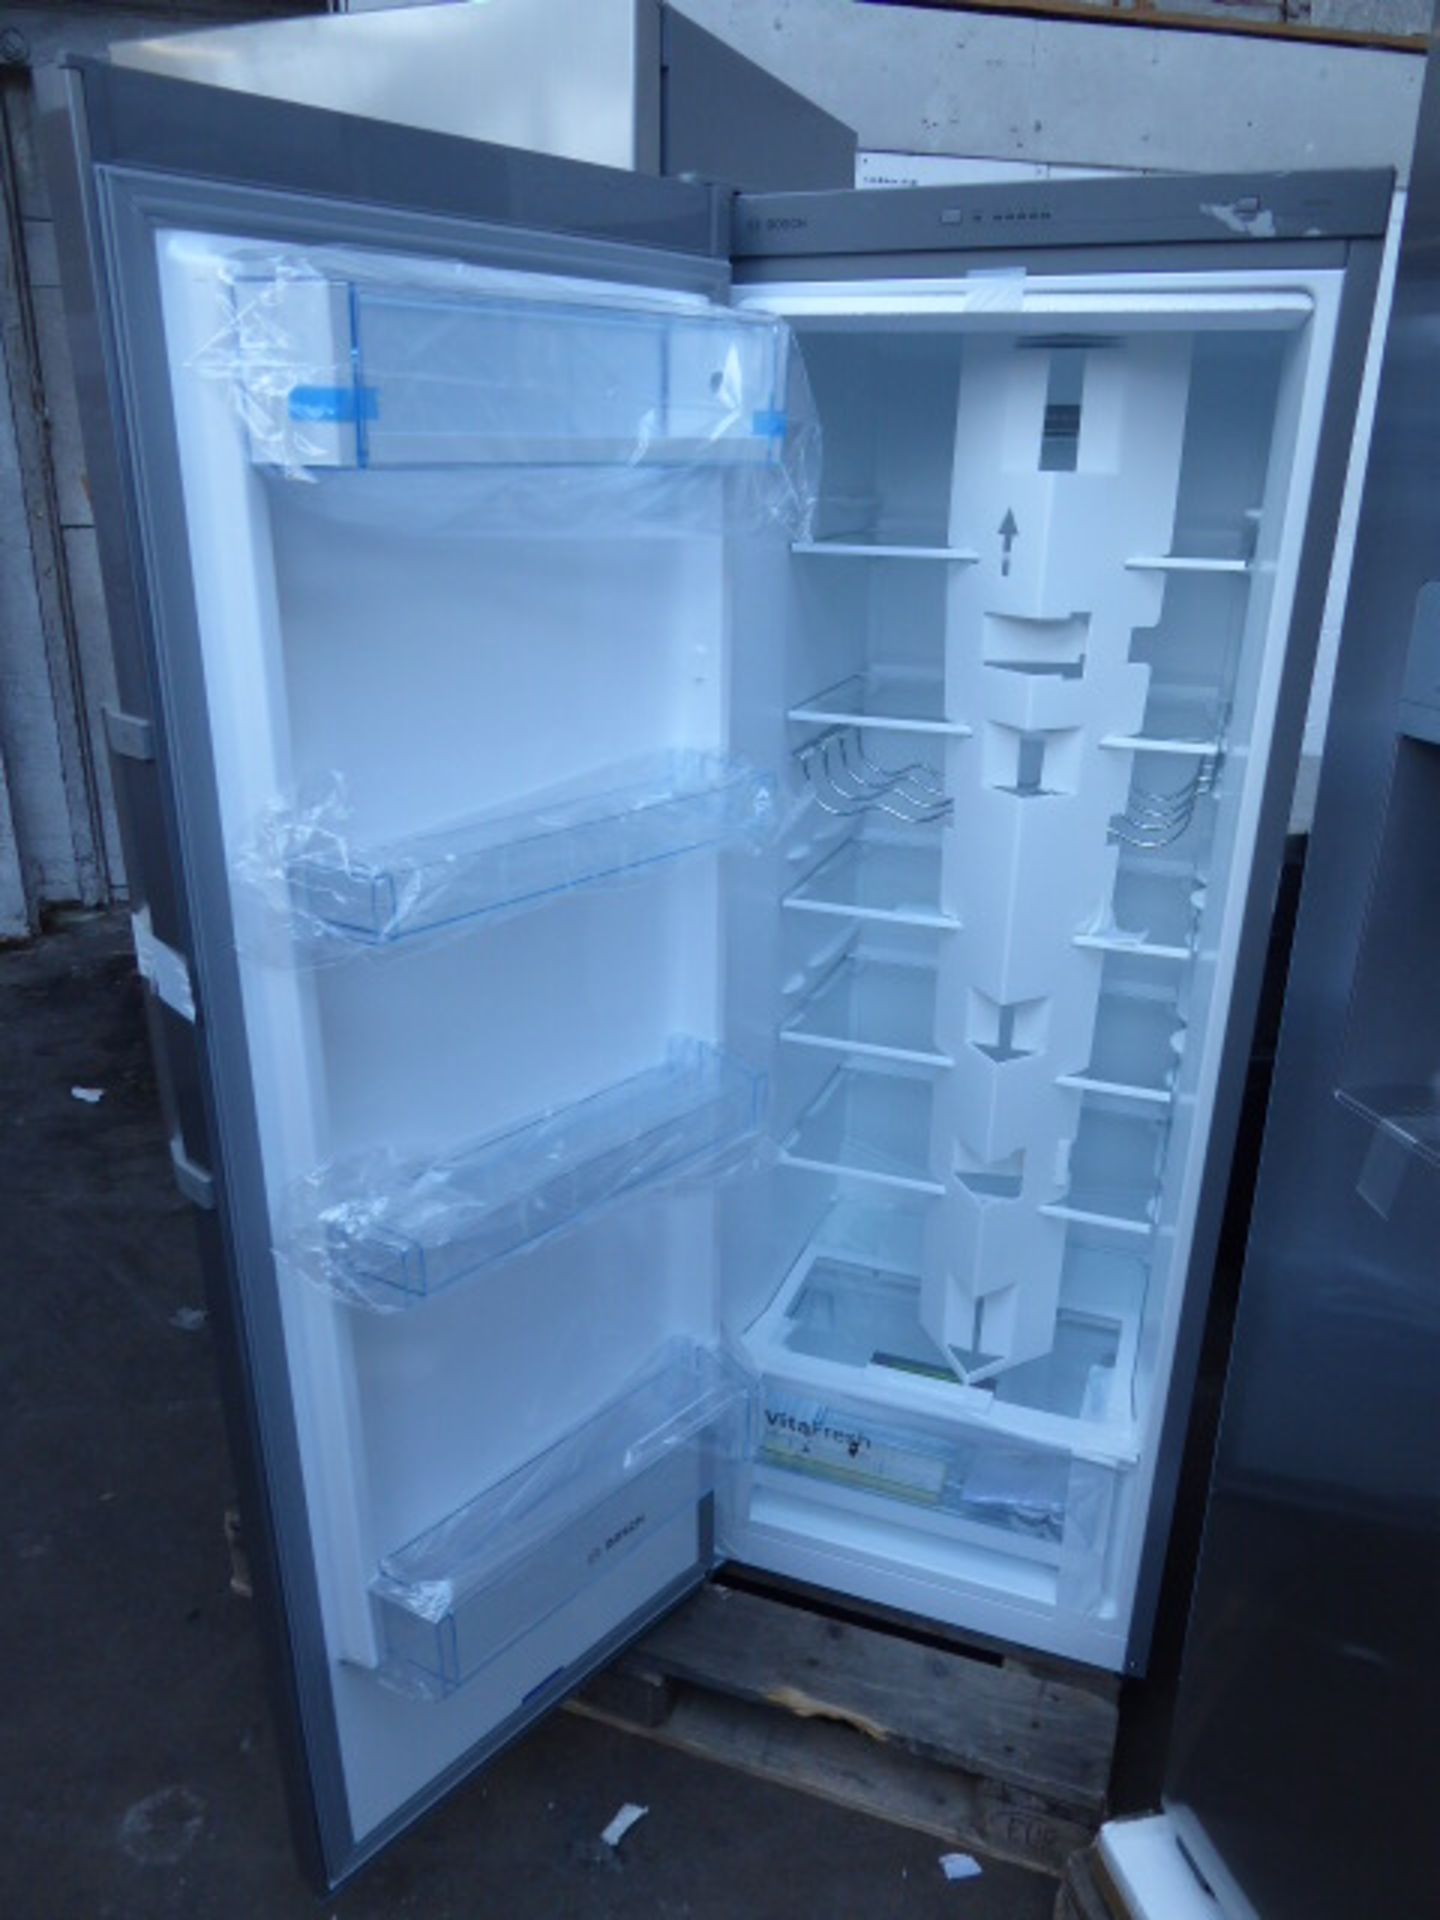 KSV29VLEP-B Bosch Free-standing refrigerator - Image 2 of 2